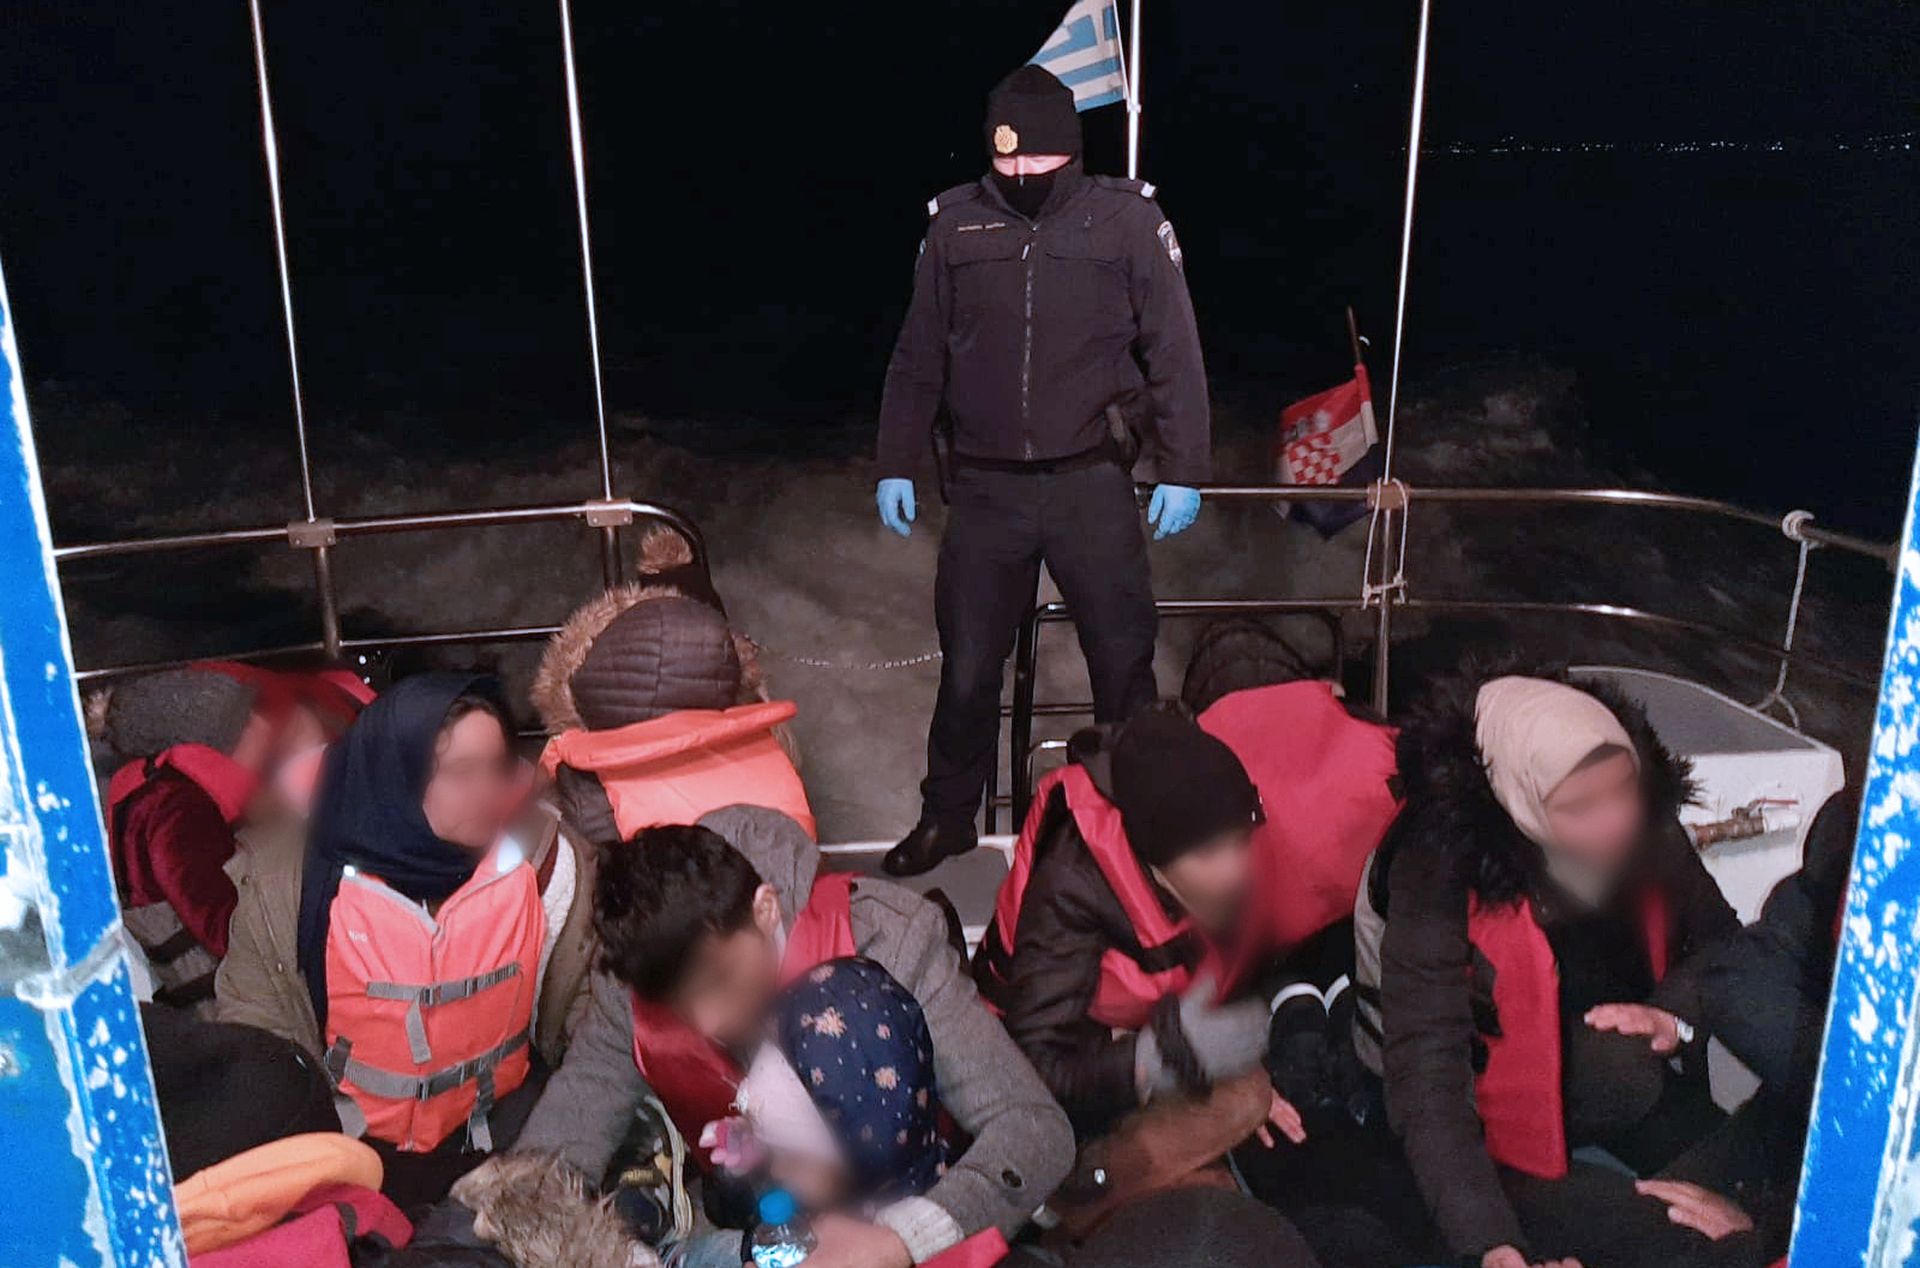 Dubrovnik, 14.2.2020 - Tijekom nadzora morske granice Europske unije s Turskom u sklopu Frontexove misije "Posejdon" èetiri su dubrovaèka pomorska policajca u ponedjeljak, 10. veljaèe, u Egejskom moru spasila 36 migranata s gumenjaka koji je ostao bez goriva, objavila je u petak dubrovaèka policija. Gumenjak s migrantima uoèen je na podruèju od delte rijeke Evros (Marica) do mjesta Makri. S gumenjaka se èulo zapomaganje, a policajci su odmah pritekli u pomoæ.
foto HINA/ PU dubrovaèko-neretvanska/ ua